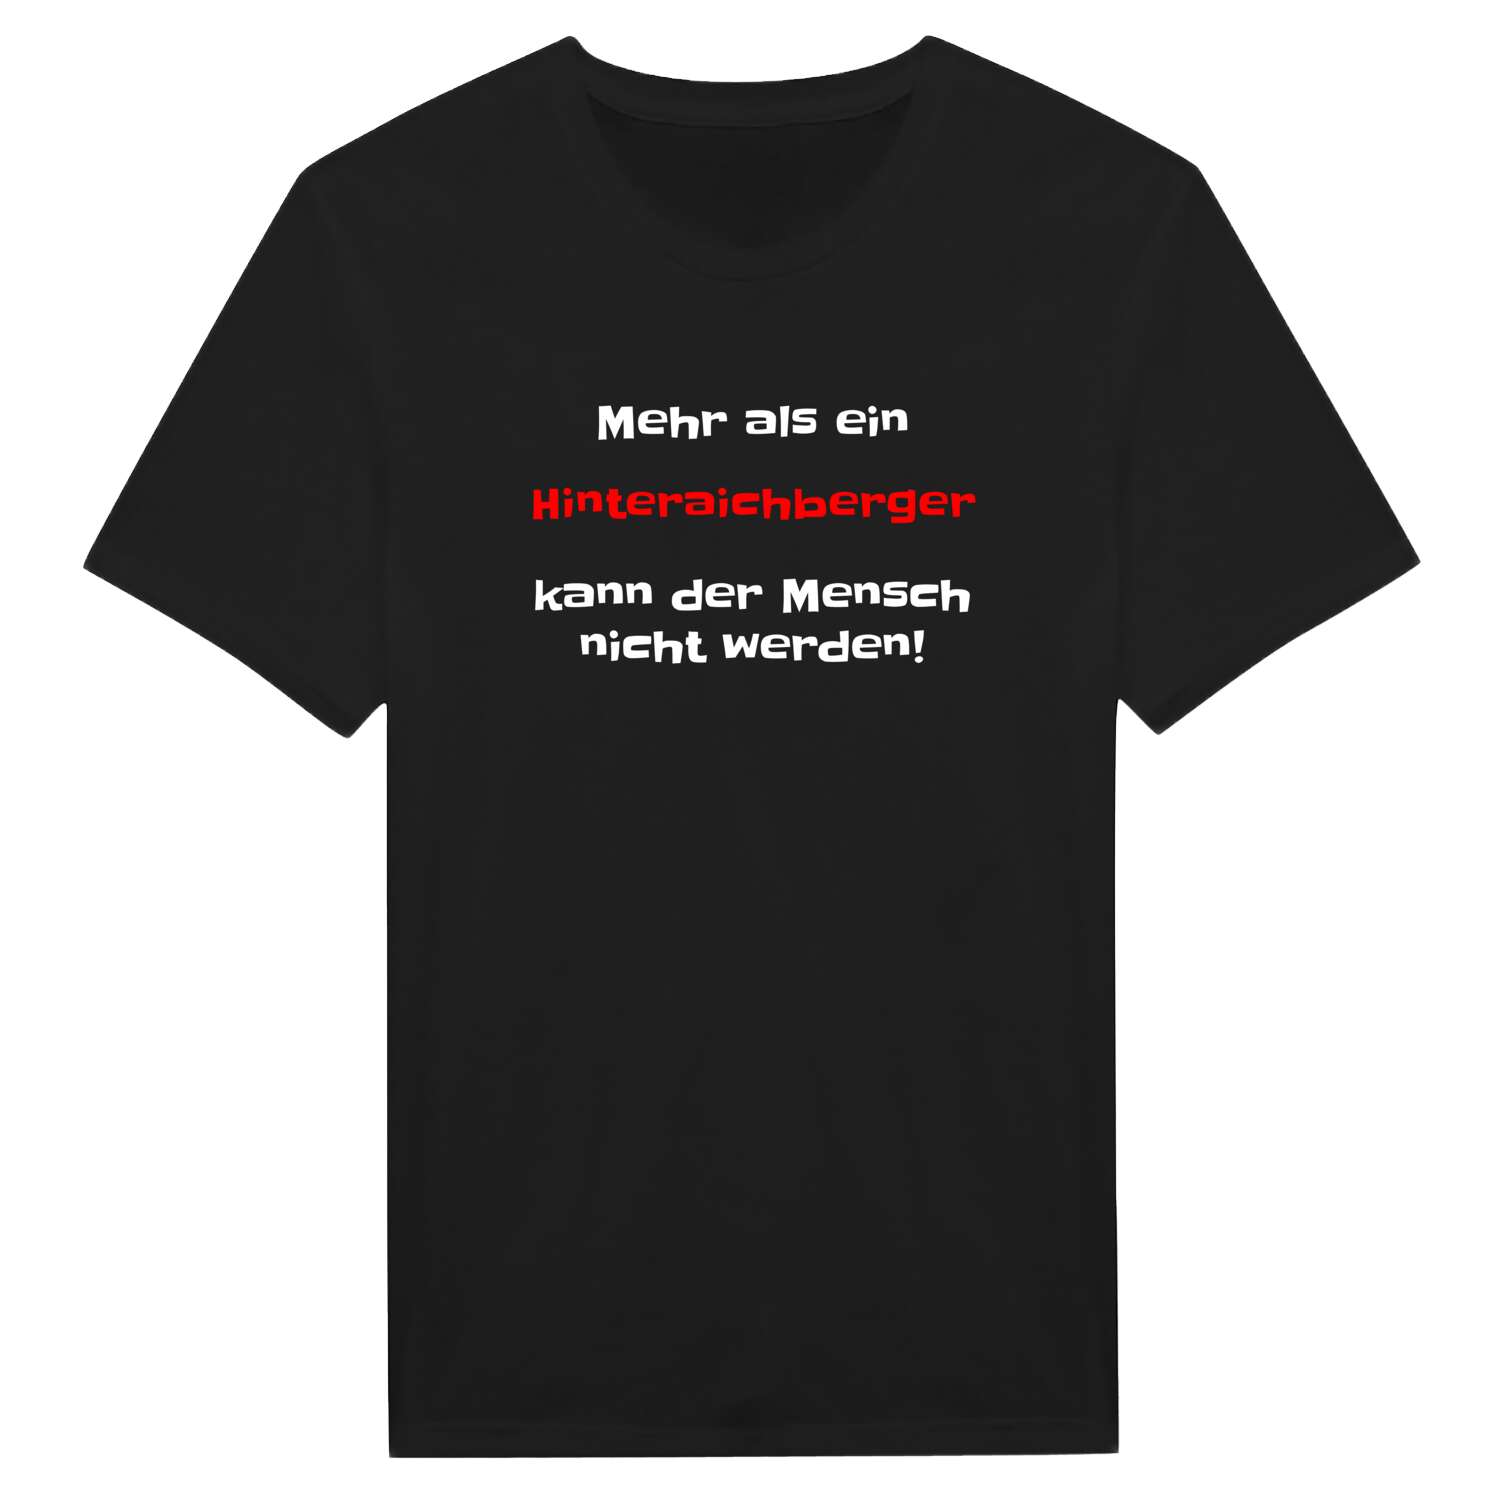 Hinteraichberg T-Shirt »Mehr als ein«